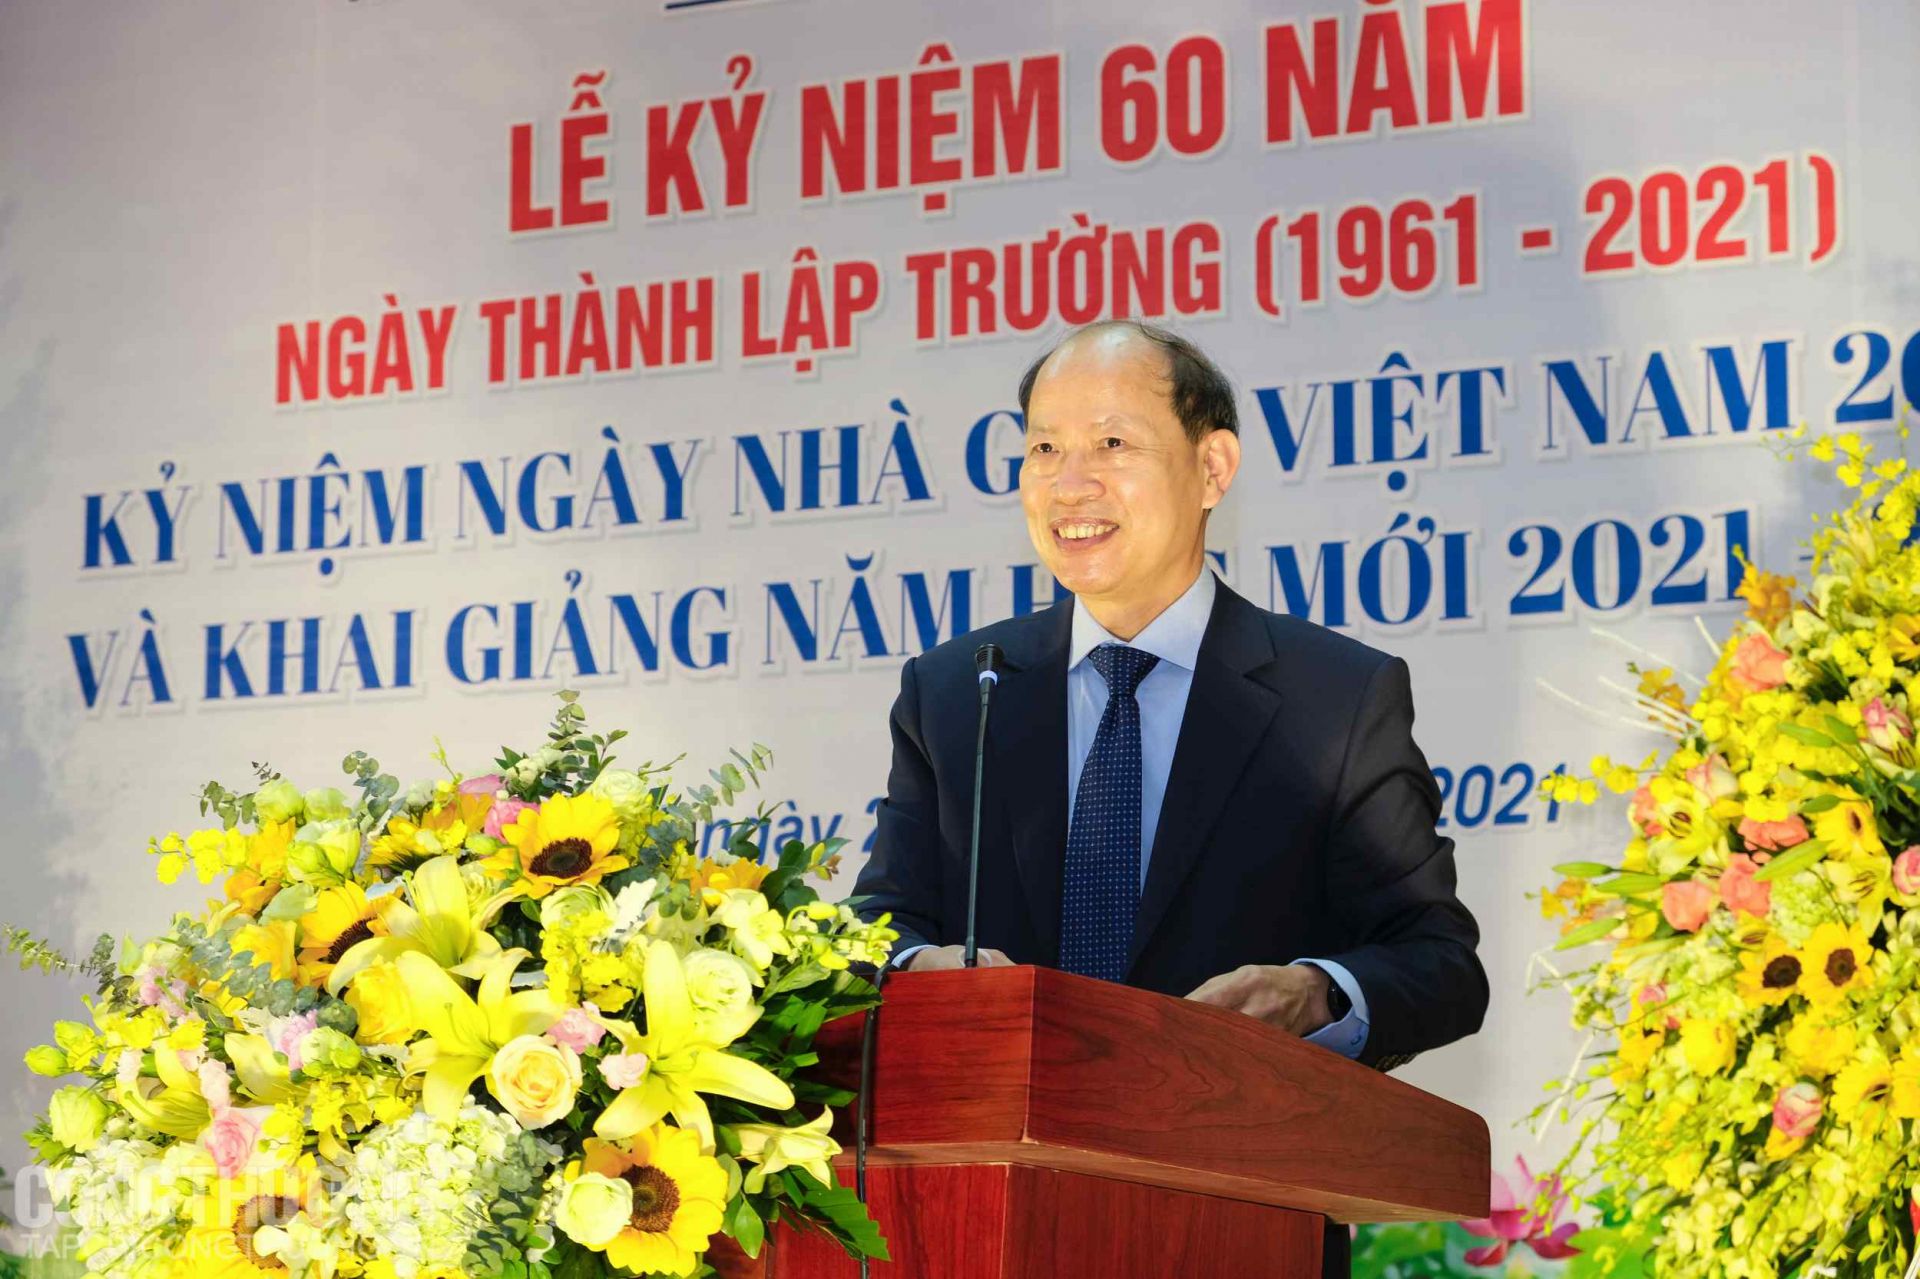 NGND, TS. Hà Xuân Quang - Hiệu trưởng Trường Cao đẳng Kinh tế Công nghiệp Hà Nội